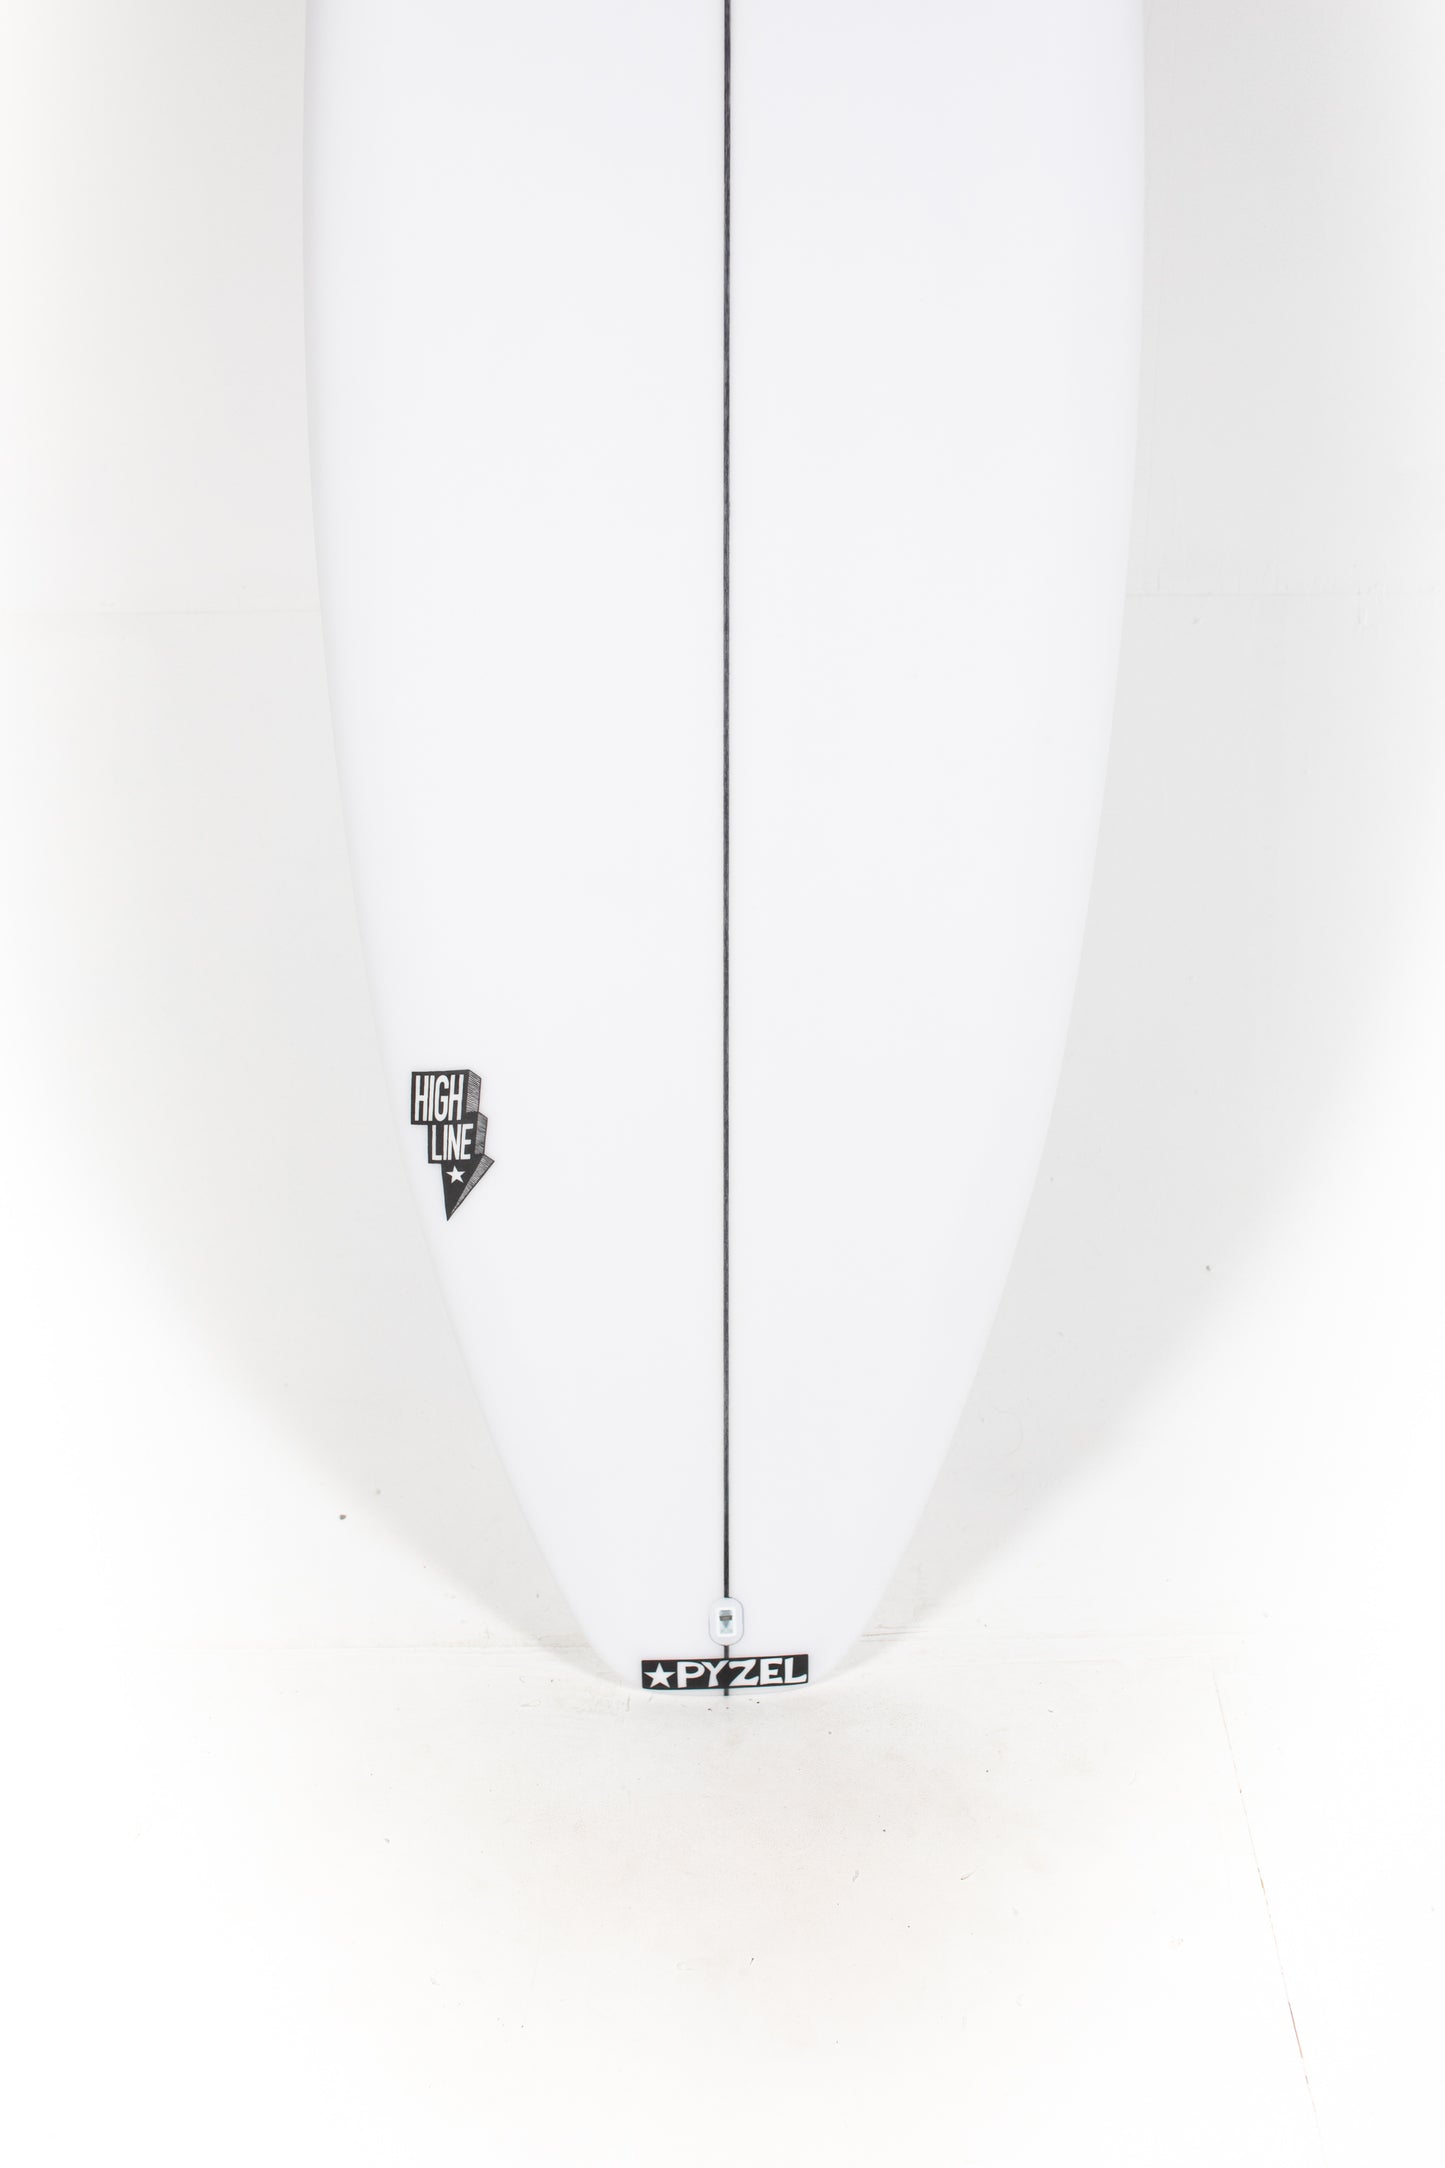 
                  
                    Pukas Surf Shop - Pyzel Surfboards - HIGH LINE - 5'11" x 19 1/8 x 2 7/16 x 28,20L - Ref: 679321
                  
                